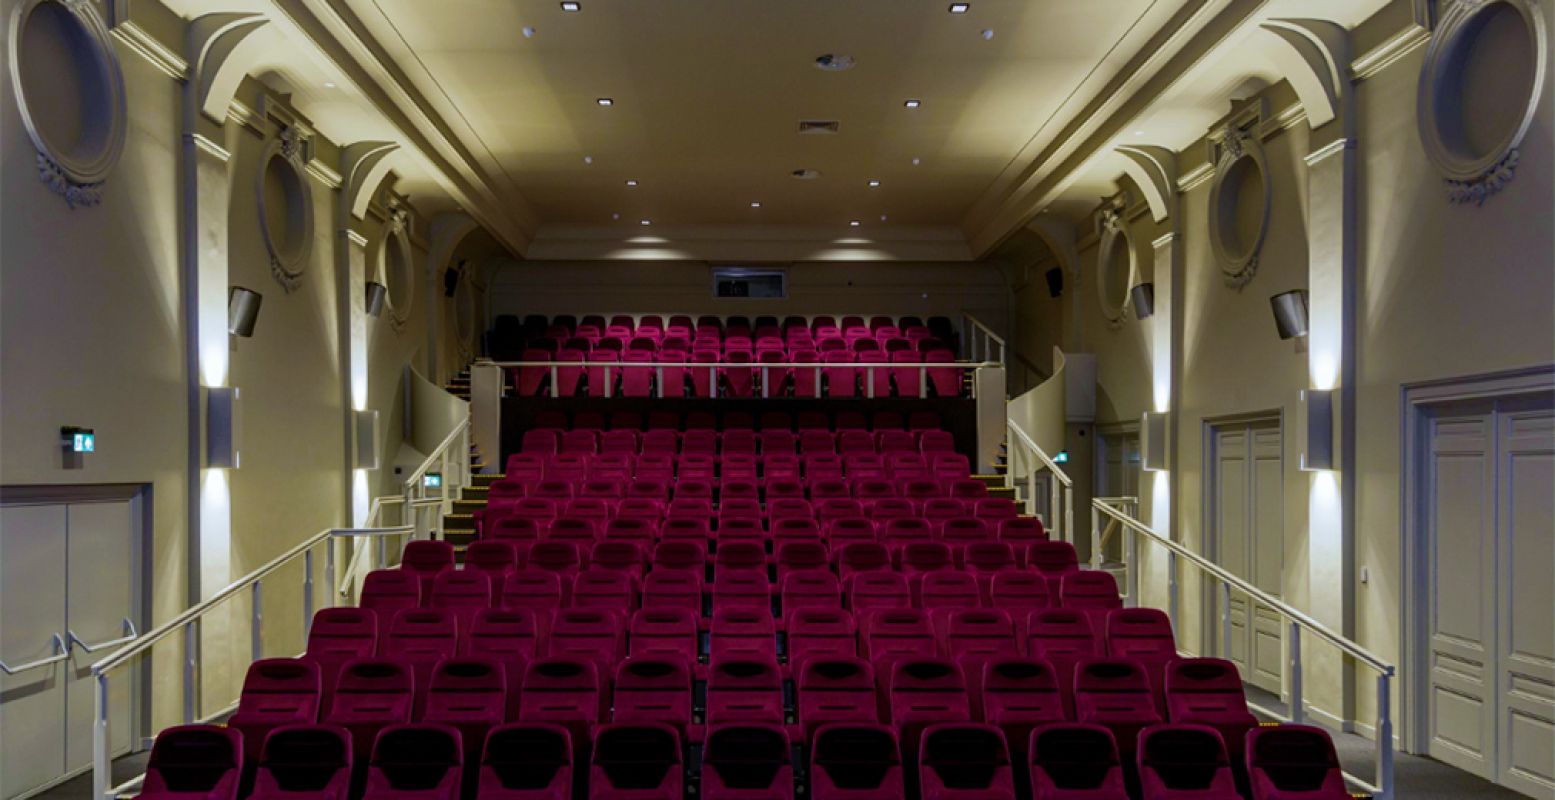 De grootste filmzaal van filmhuis Cinecitta in Tilburg. In deze zaal wordt al meer dan 100 jaar film gedraaid! Foto: Cinecitta © Vincent Nabbe.